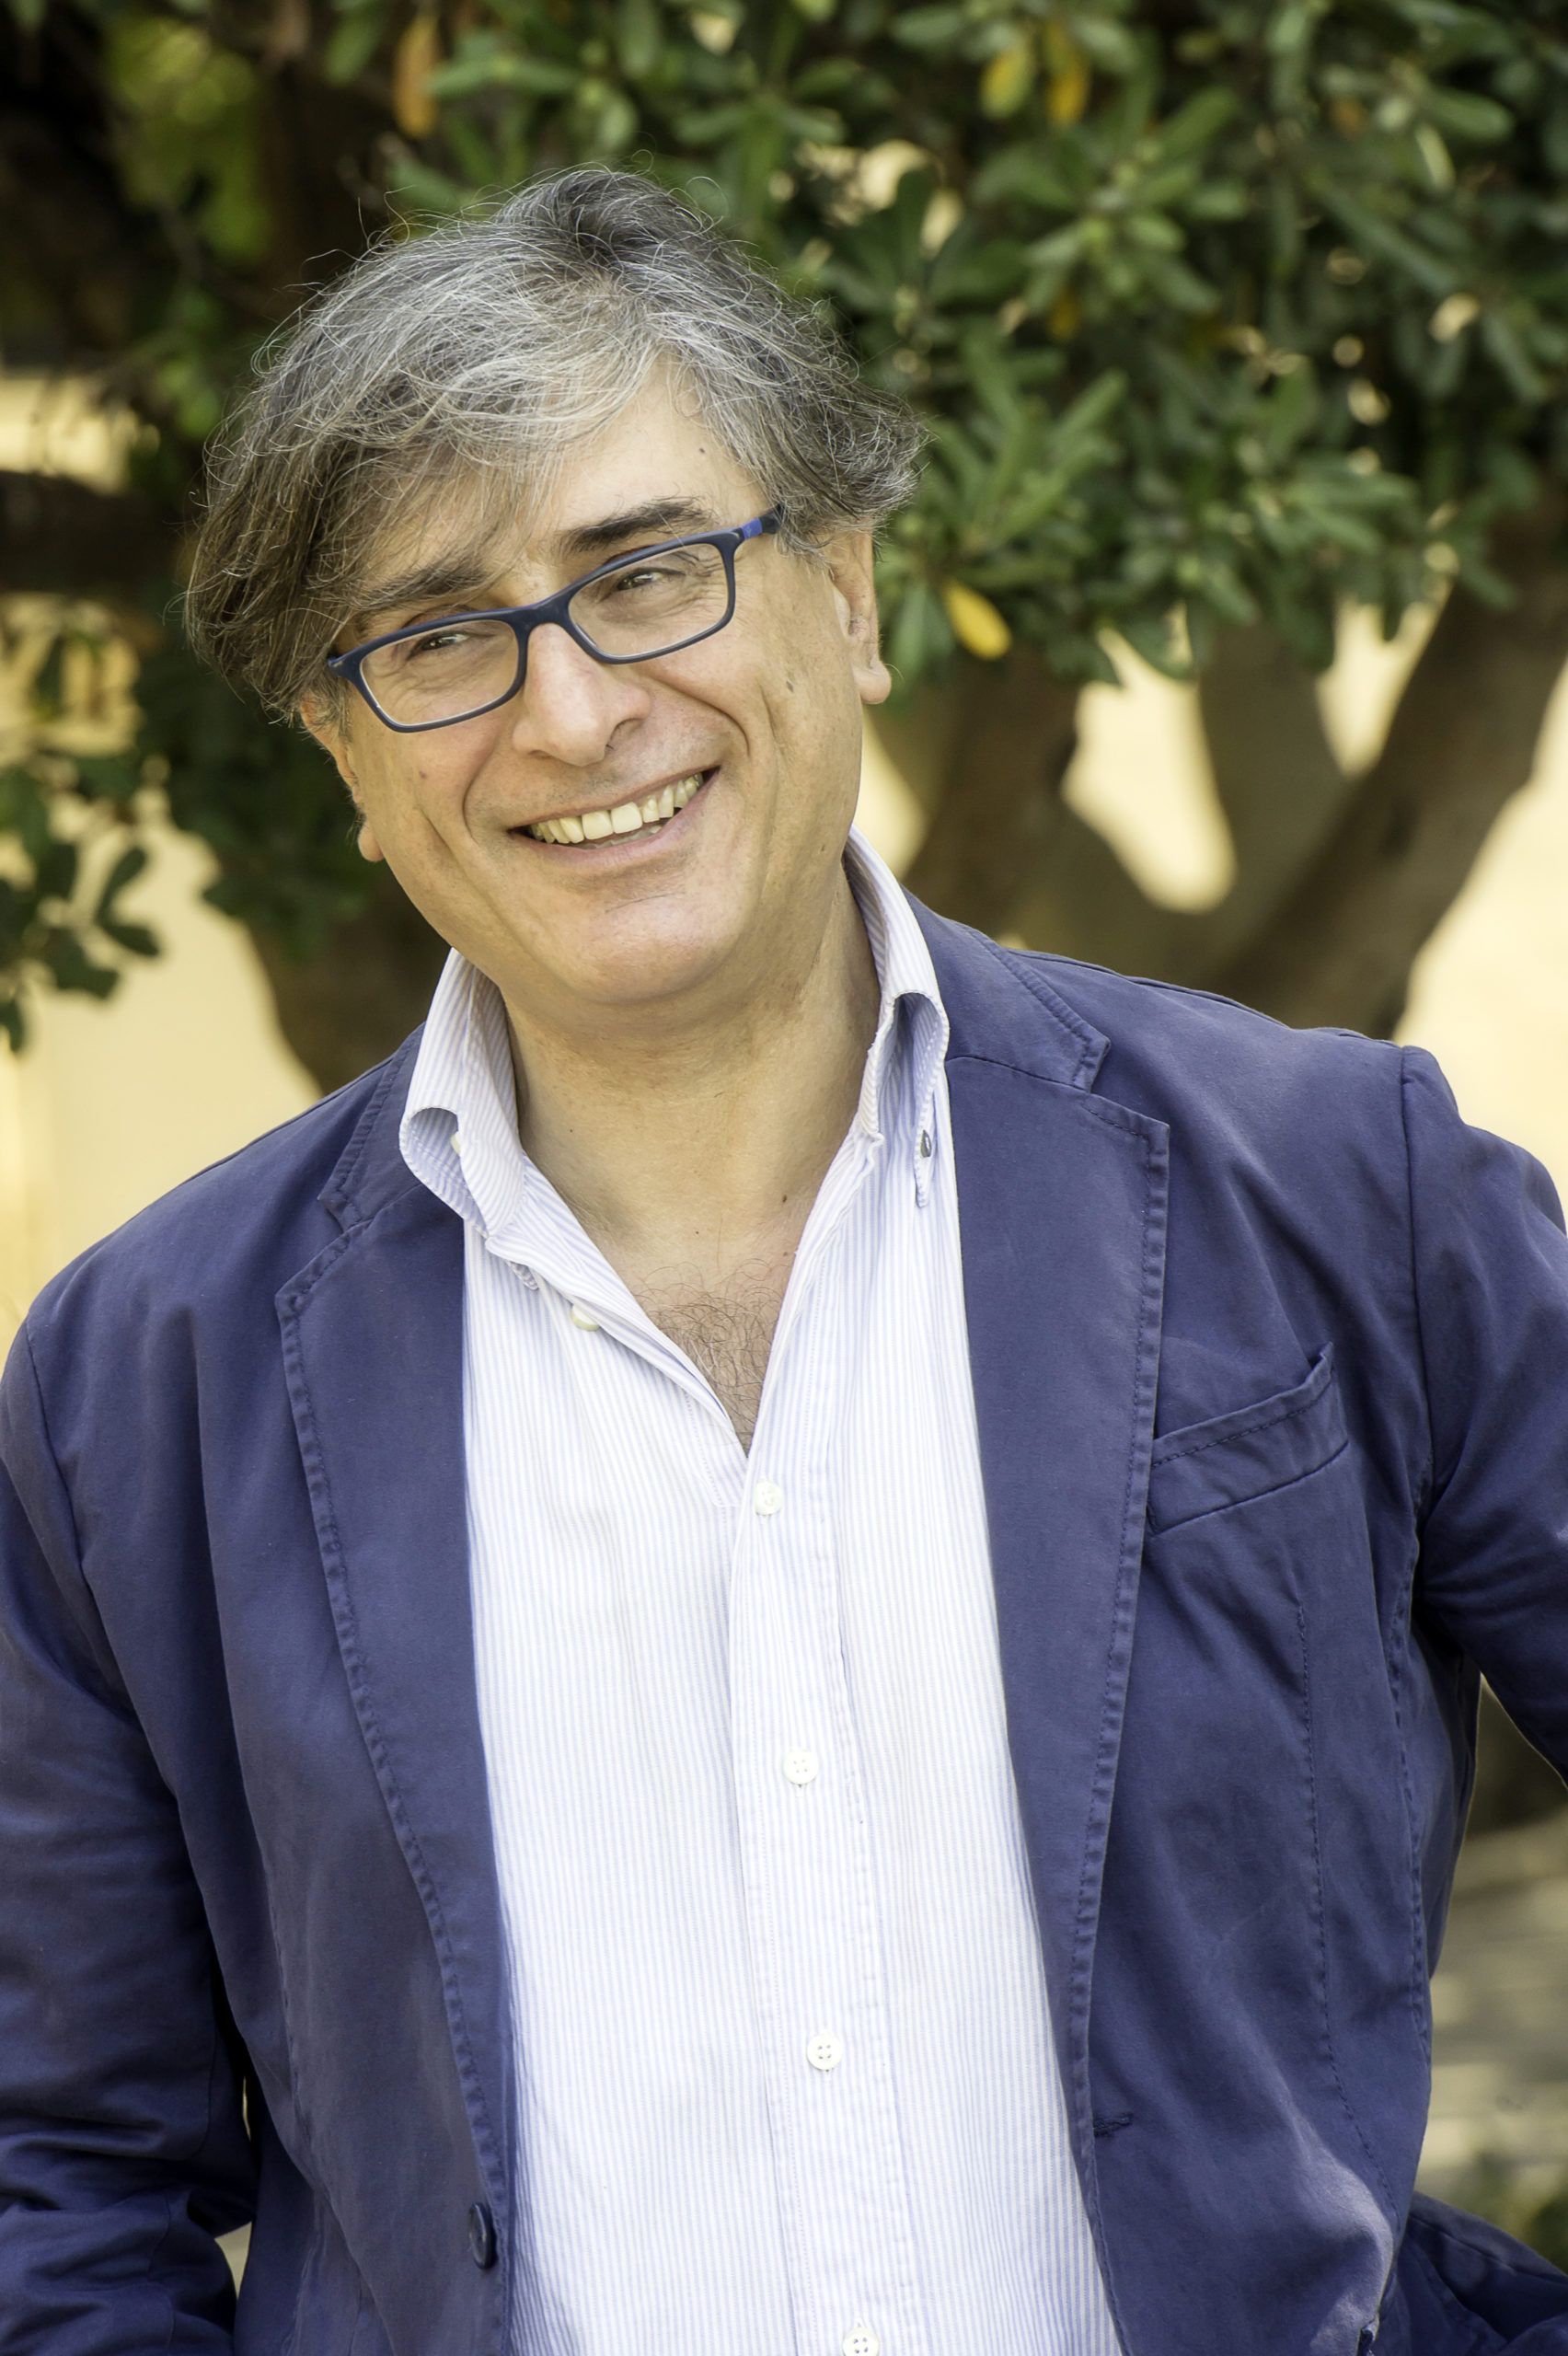 Nicasio Anzelmo, direttore artistico del Calatafimi Segesta Festival, tra i premiati de L’Ombra della Sera